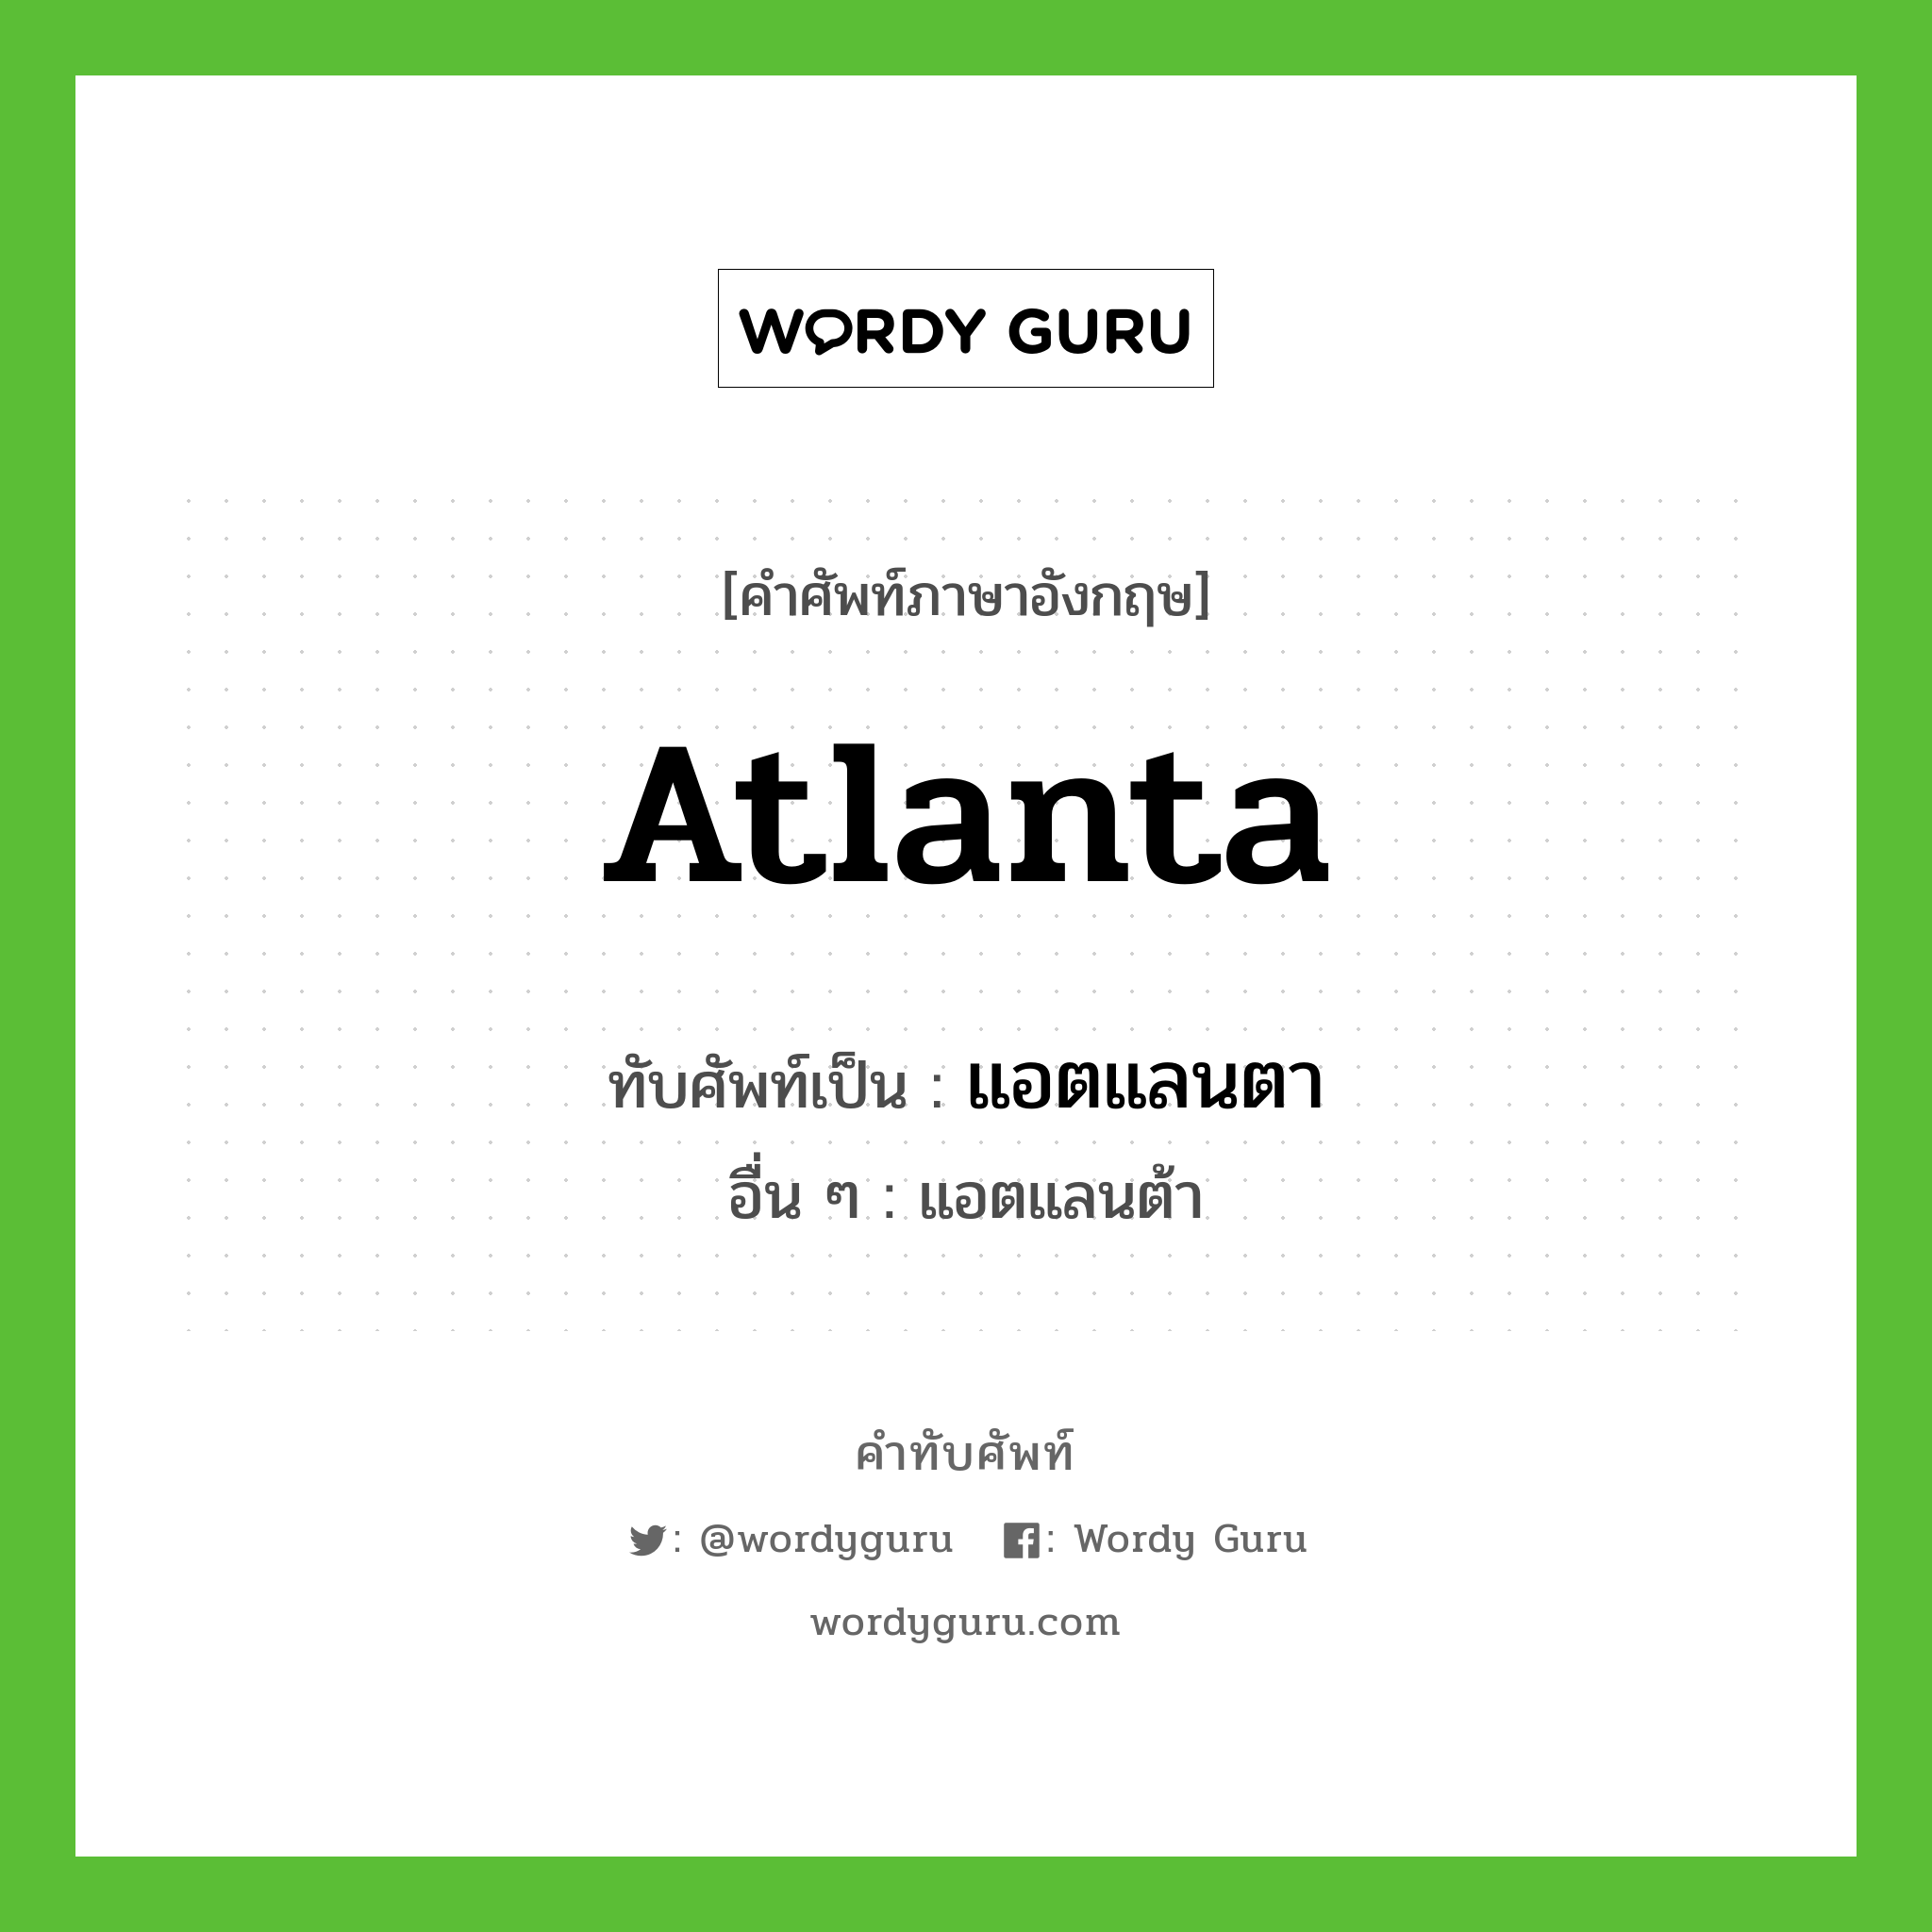 Atlanta เขียนเป็นคำไทยว่าอะไร?, คำศัพท์ภาษาอังกฤษ Atlanta ทับศัพท์เป็น แอตแลนตา อื่น ๆ แอตแลนต้า